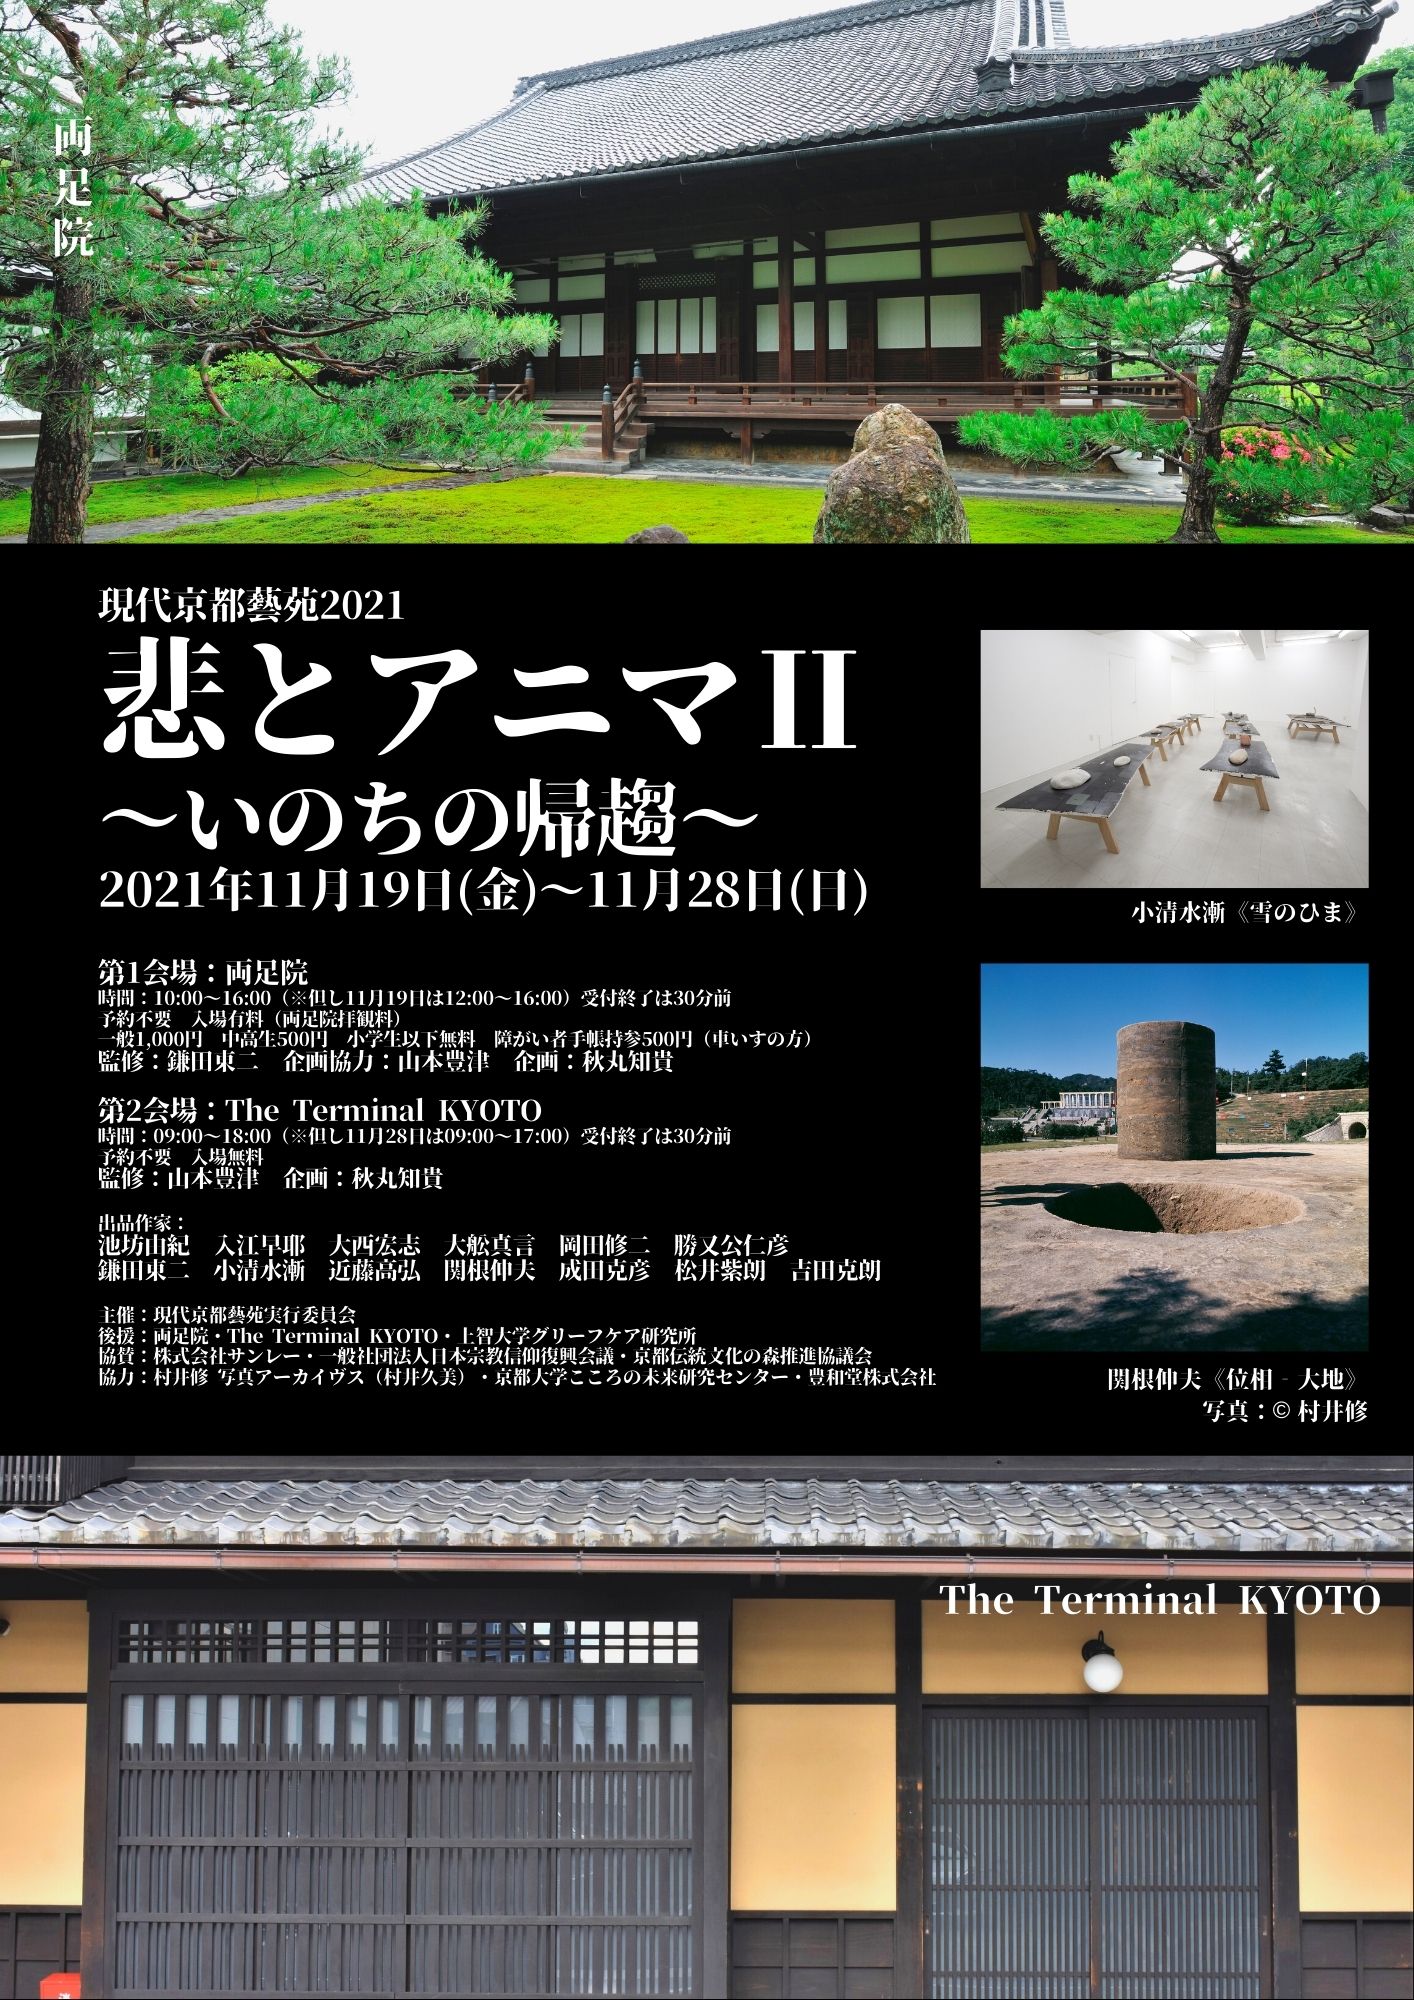 現代京都藝苑2021」開催報告 秋丸知貴評 | アート&ブックを絵解きするeTOKI